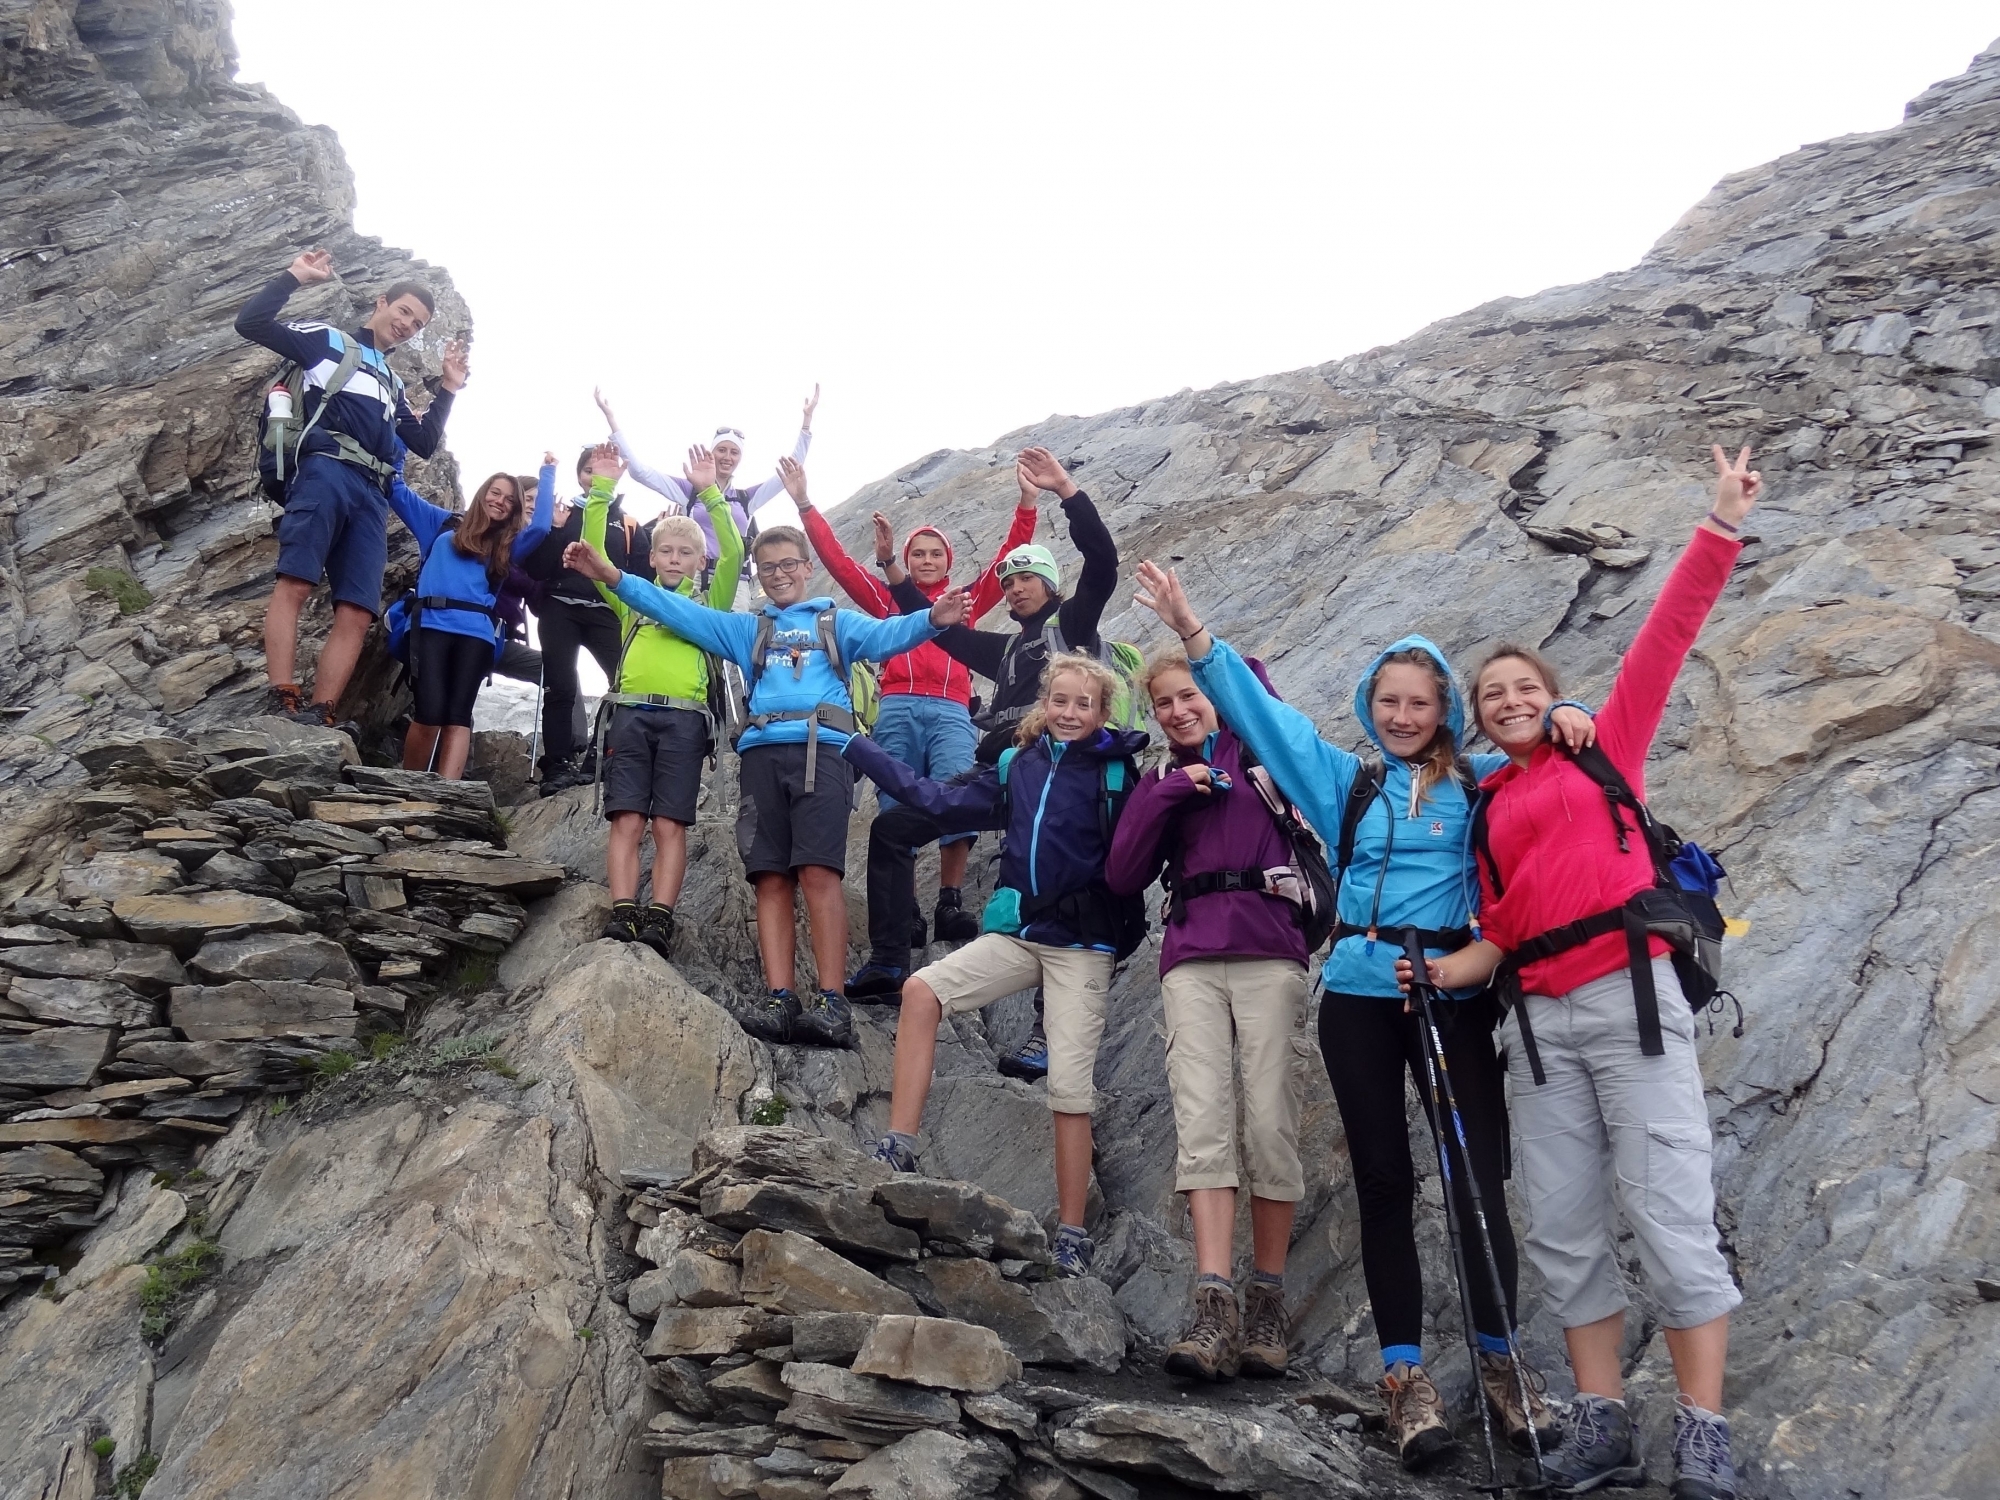 Pandémie oblige, les jeunes randonneurs peuvent de nouveau participer aux randonnées pédagogiques autour du Mont-Blanc, mais la formule sera adaptée.